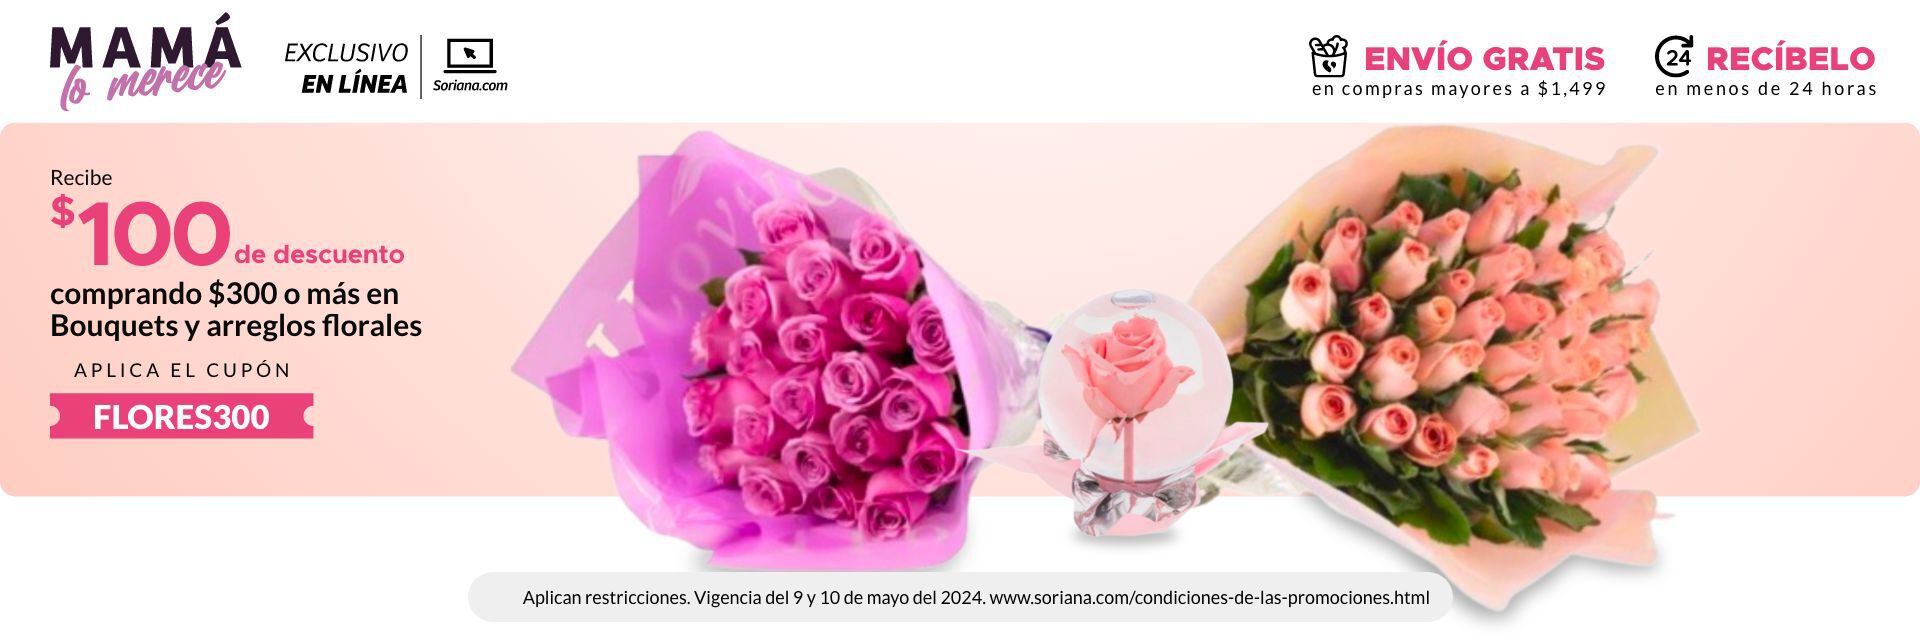 EXCLUSIVO EN LÍNEA: Obten $100 de descuento en la compra de $300 o más en Bouquets y Arreglos Florales. Exclusivo online. Limitado a 500 cupones. Vigencia del  09 al 10 de mayo del 2024.